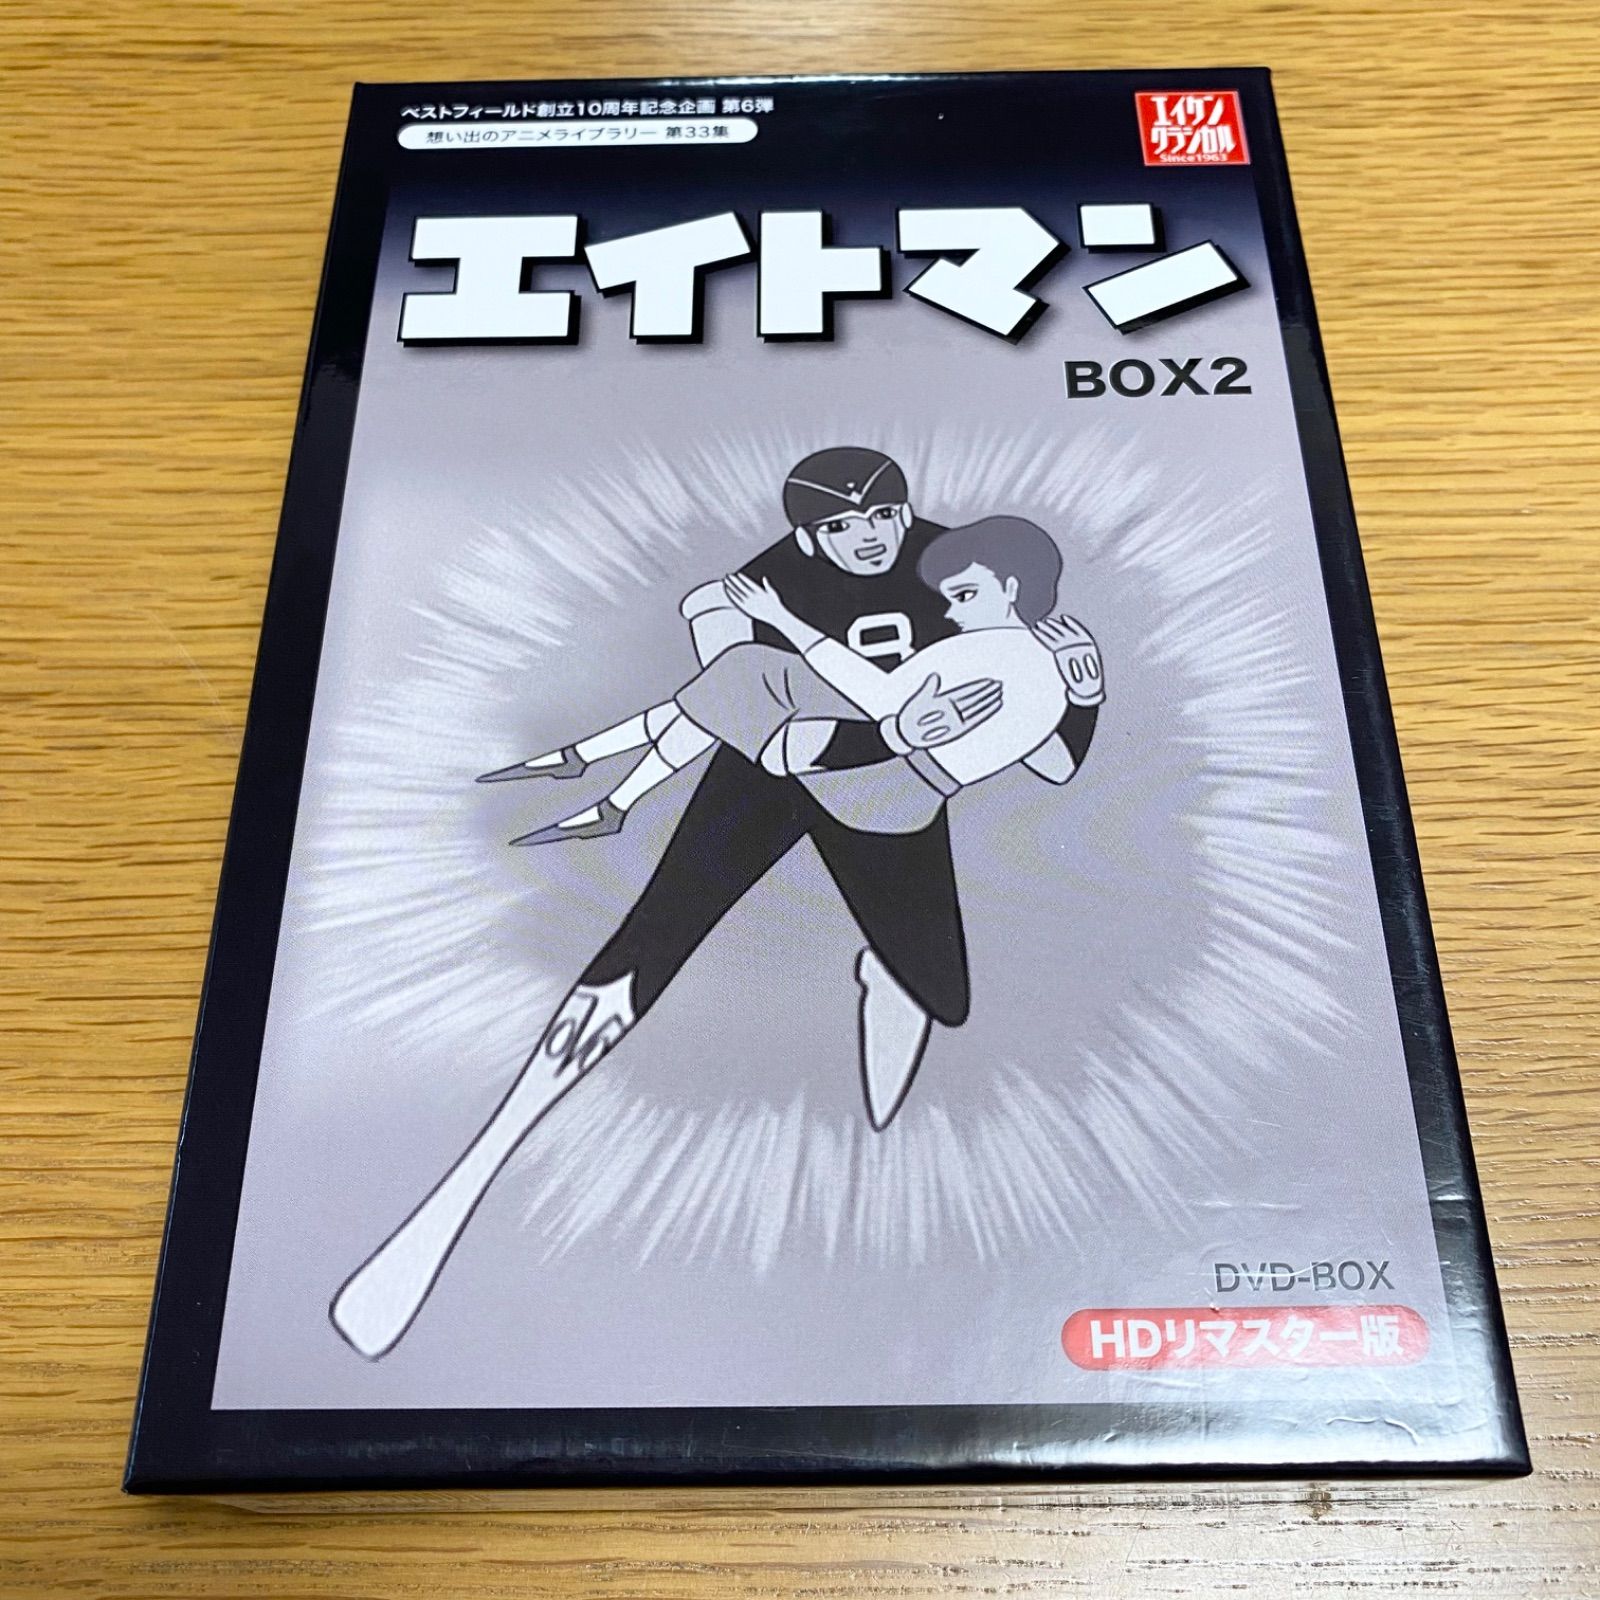 エイトマン HDリマスター DVD-BOX BOX2 アニメ 昔 想い出 - かば